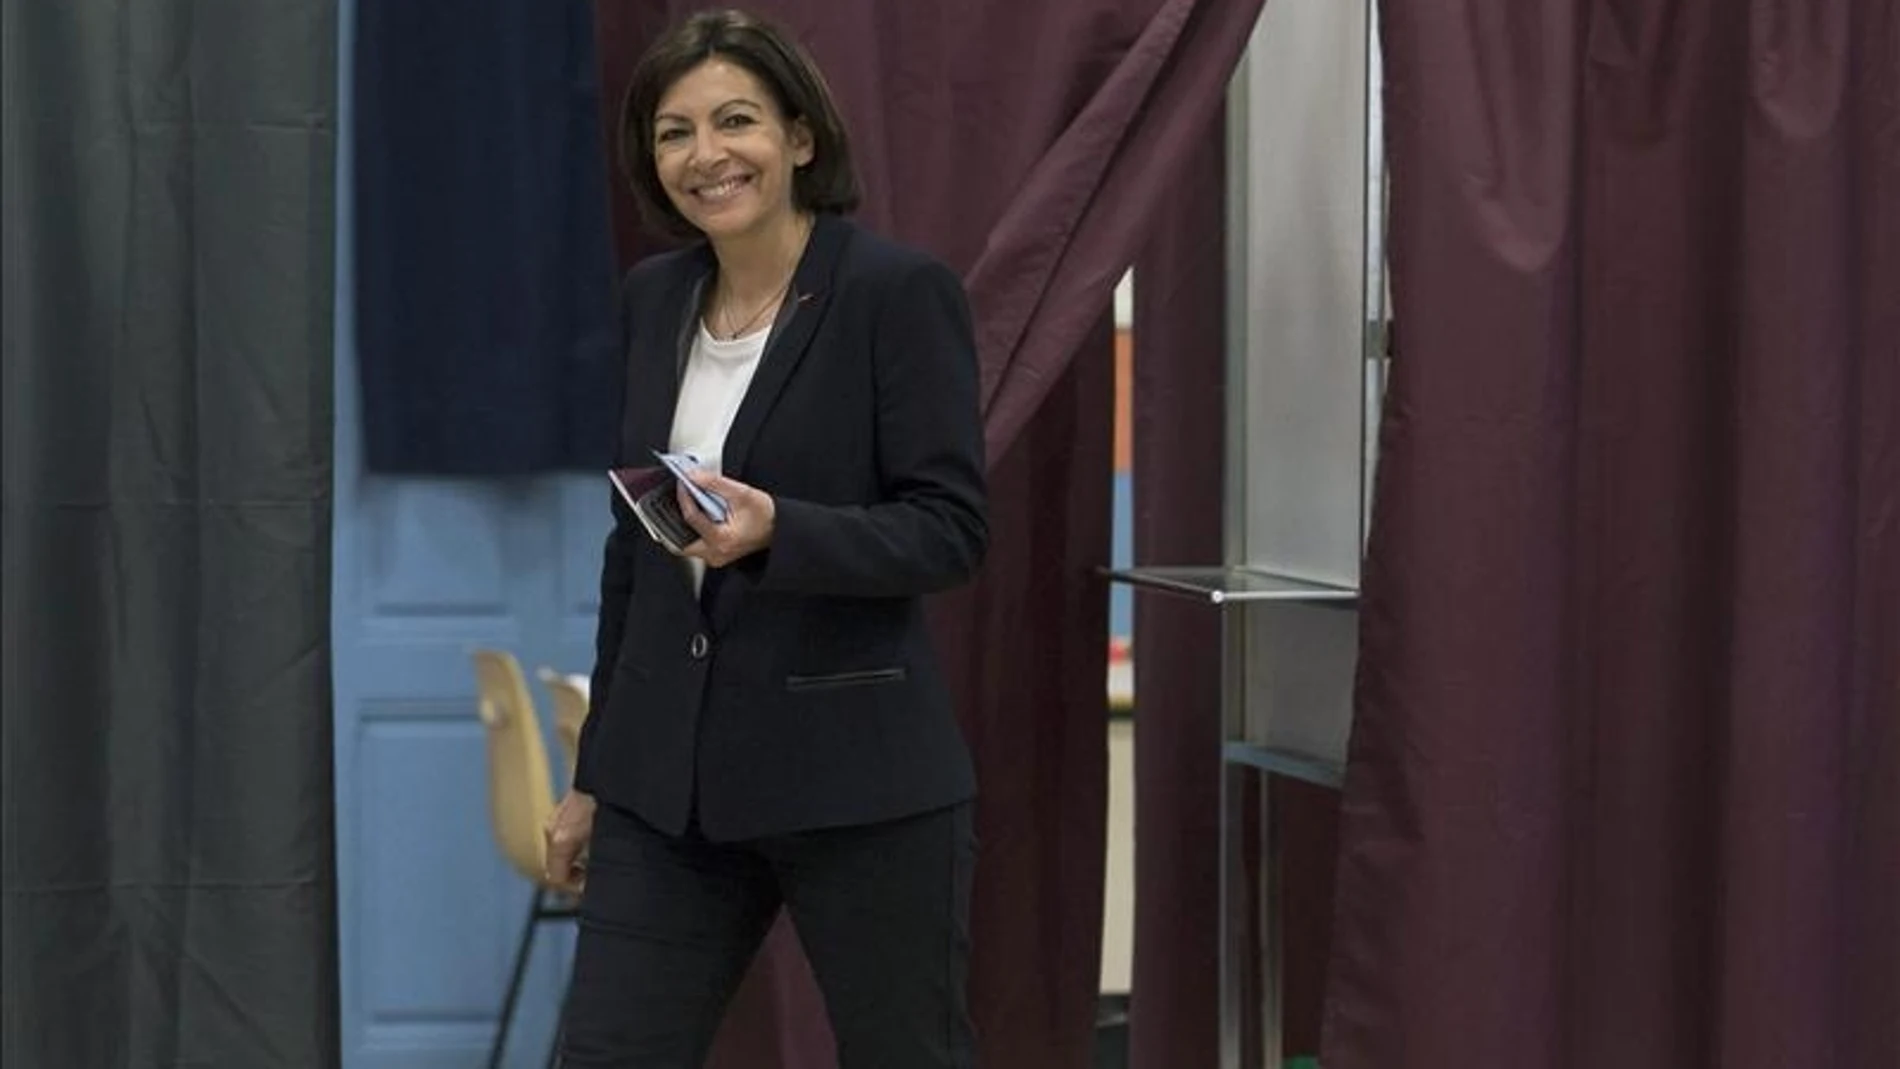 La candidata socialista a la alcaldía de París, Anne Hidalgo, deposita su voto en París.